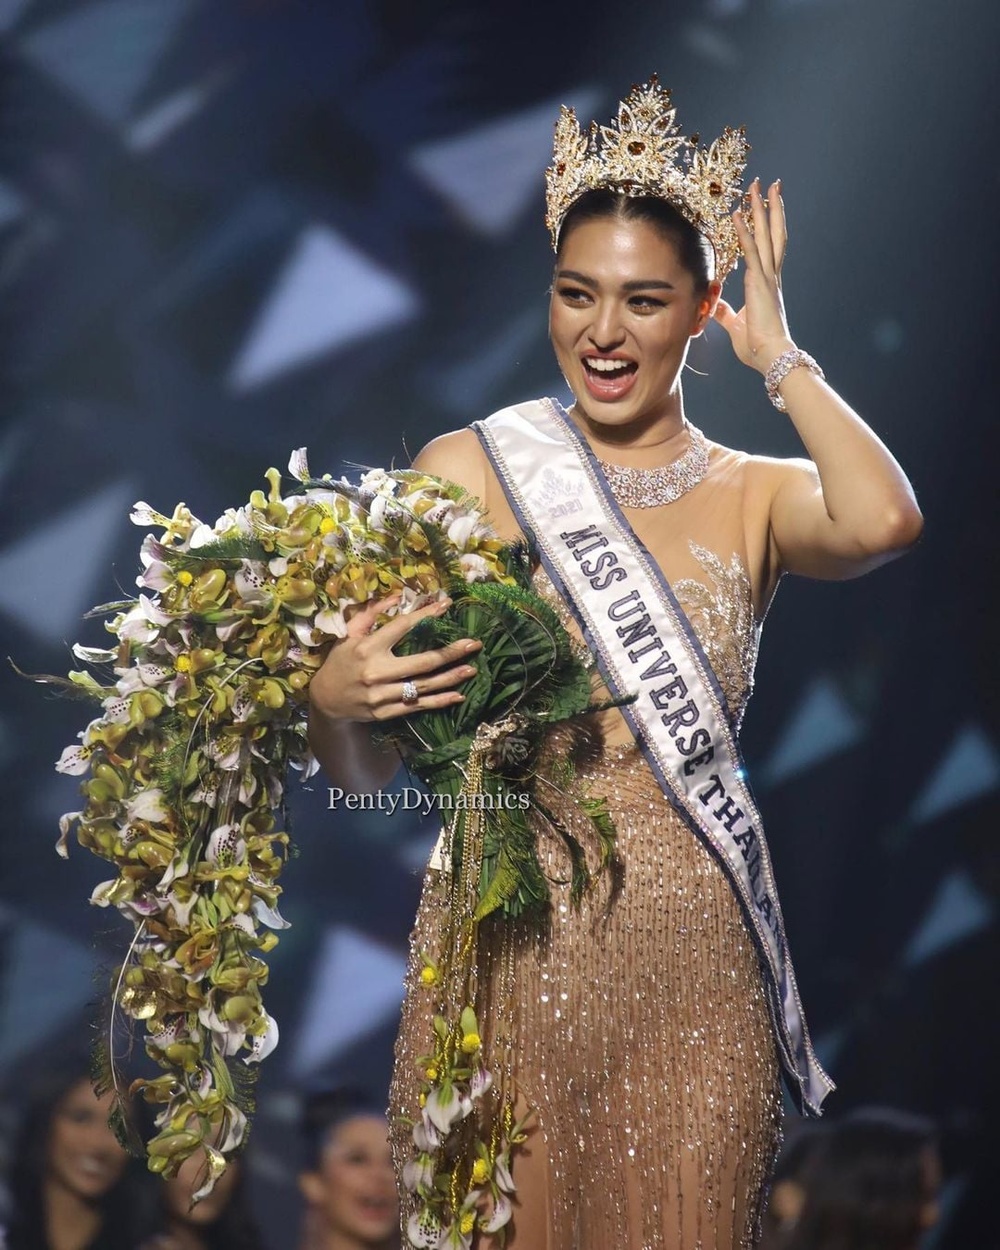  
Người đẹp chính thức trở thành đại diện của Thái Lan tại Miss Universe lần thứ 70 được tổ chức tại Israel vào tháng 12. (Ảnh: FBNV) - Tin sao Viet - Tin tuc sao Viet - Scandal sao Viet - Tin tuc cua Sao - Tin cua Sao